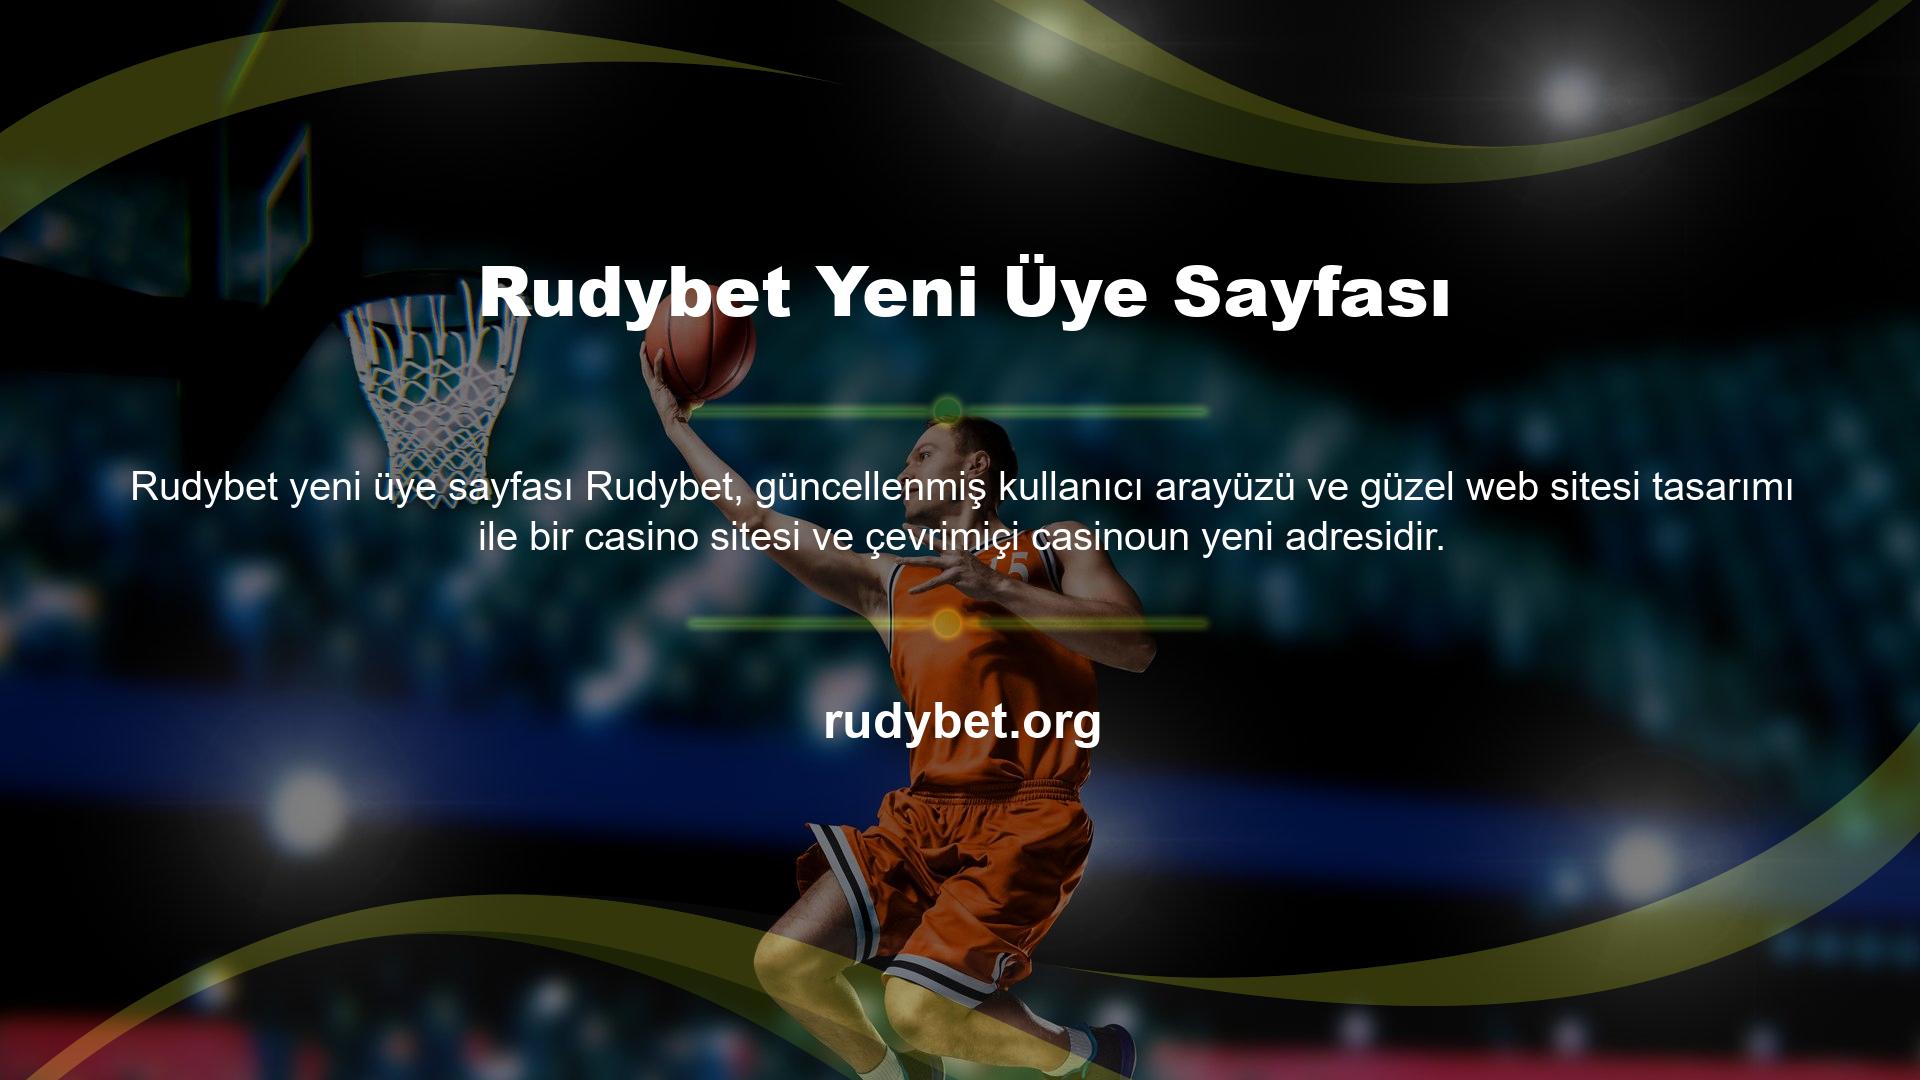 Rudybet online bahis sitesi her zaman kendini yeniliğe, kaliteye ve kapsamlı hizmete adamış bir bahis sitesidir